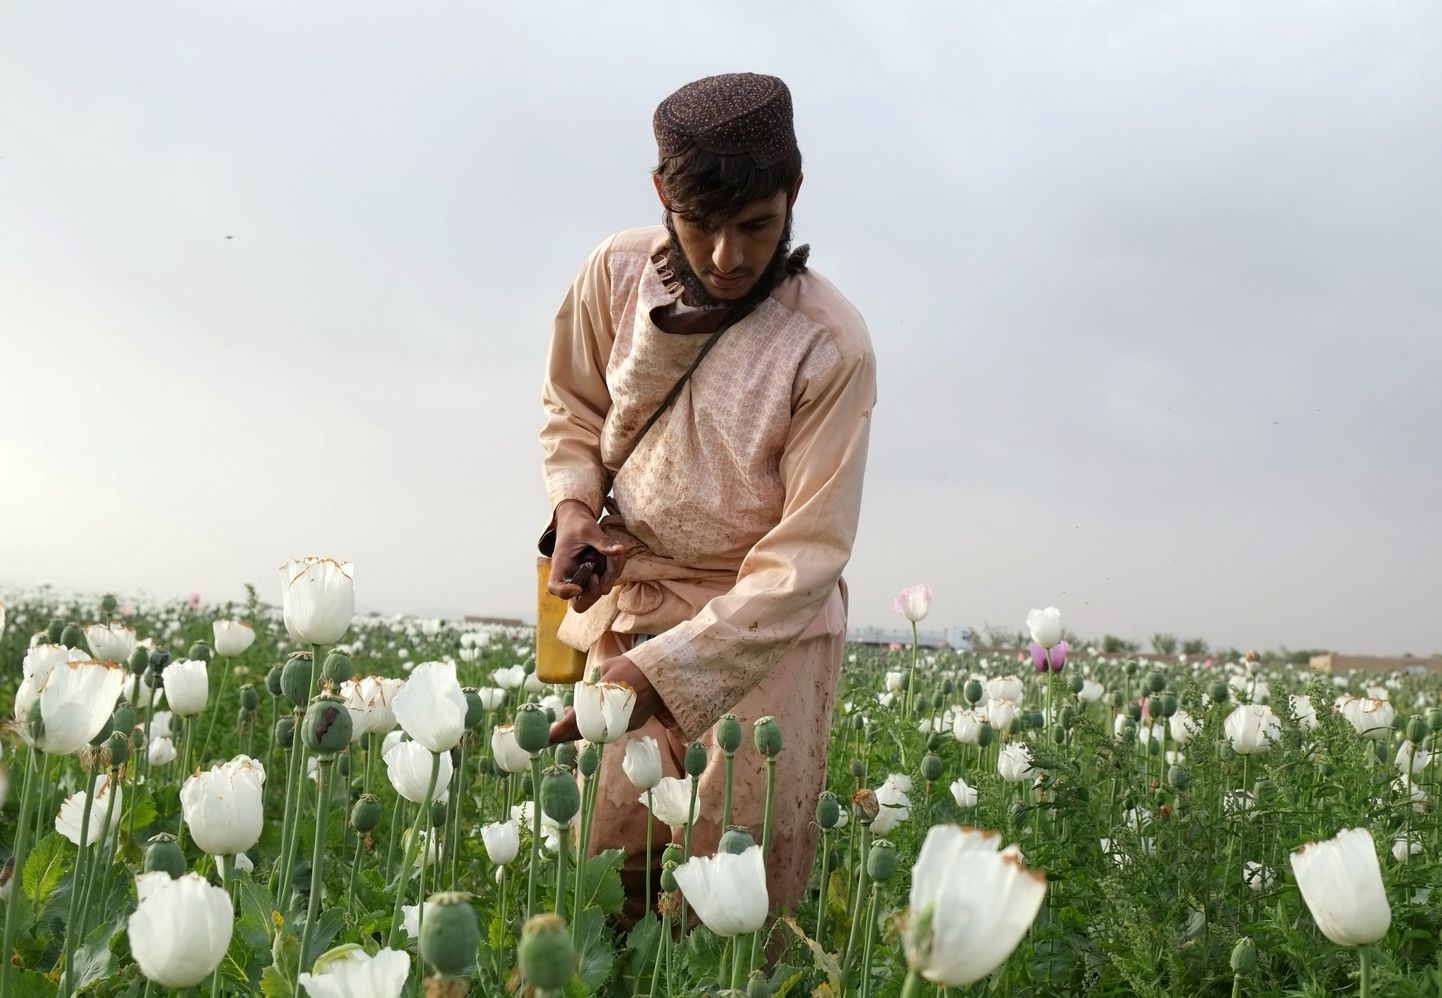 Afgaani mees töötamas oma moonipõllul Kandahari provintsis.